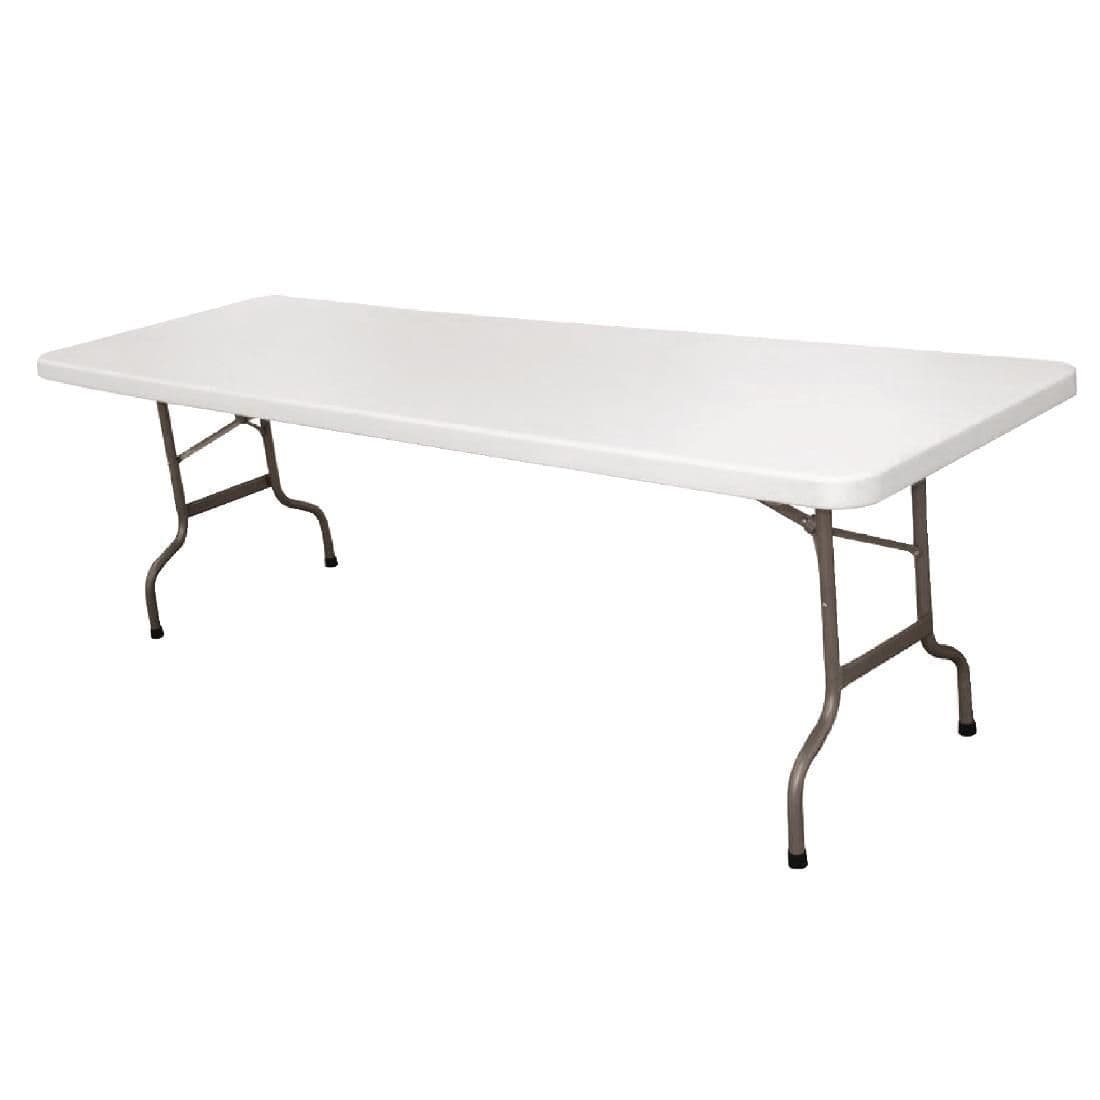 Bolero Rectangular Centre Folding Table White 8ft (Single) JD Catering Equipment Solutions Ltd